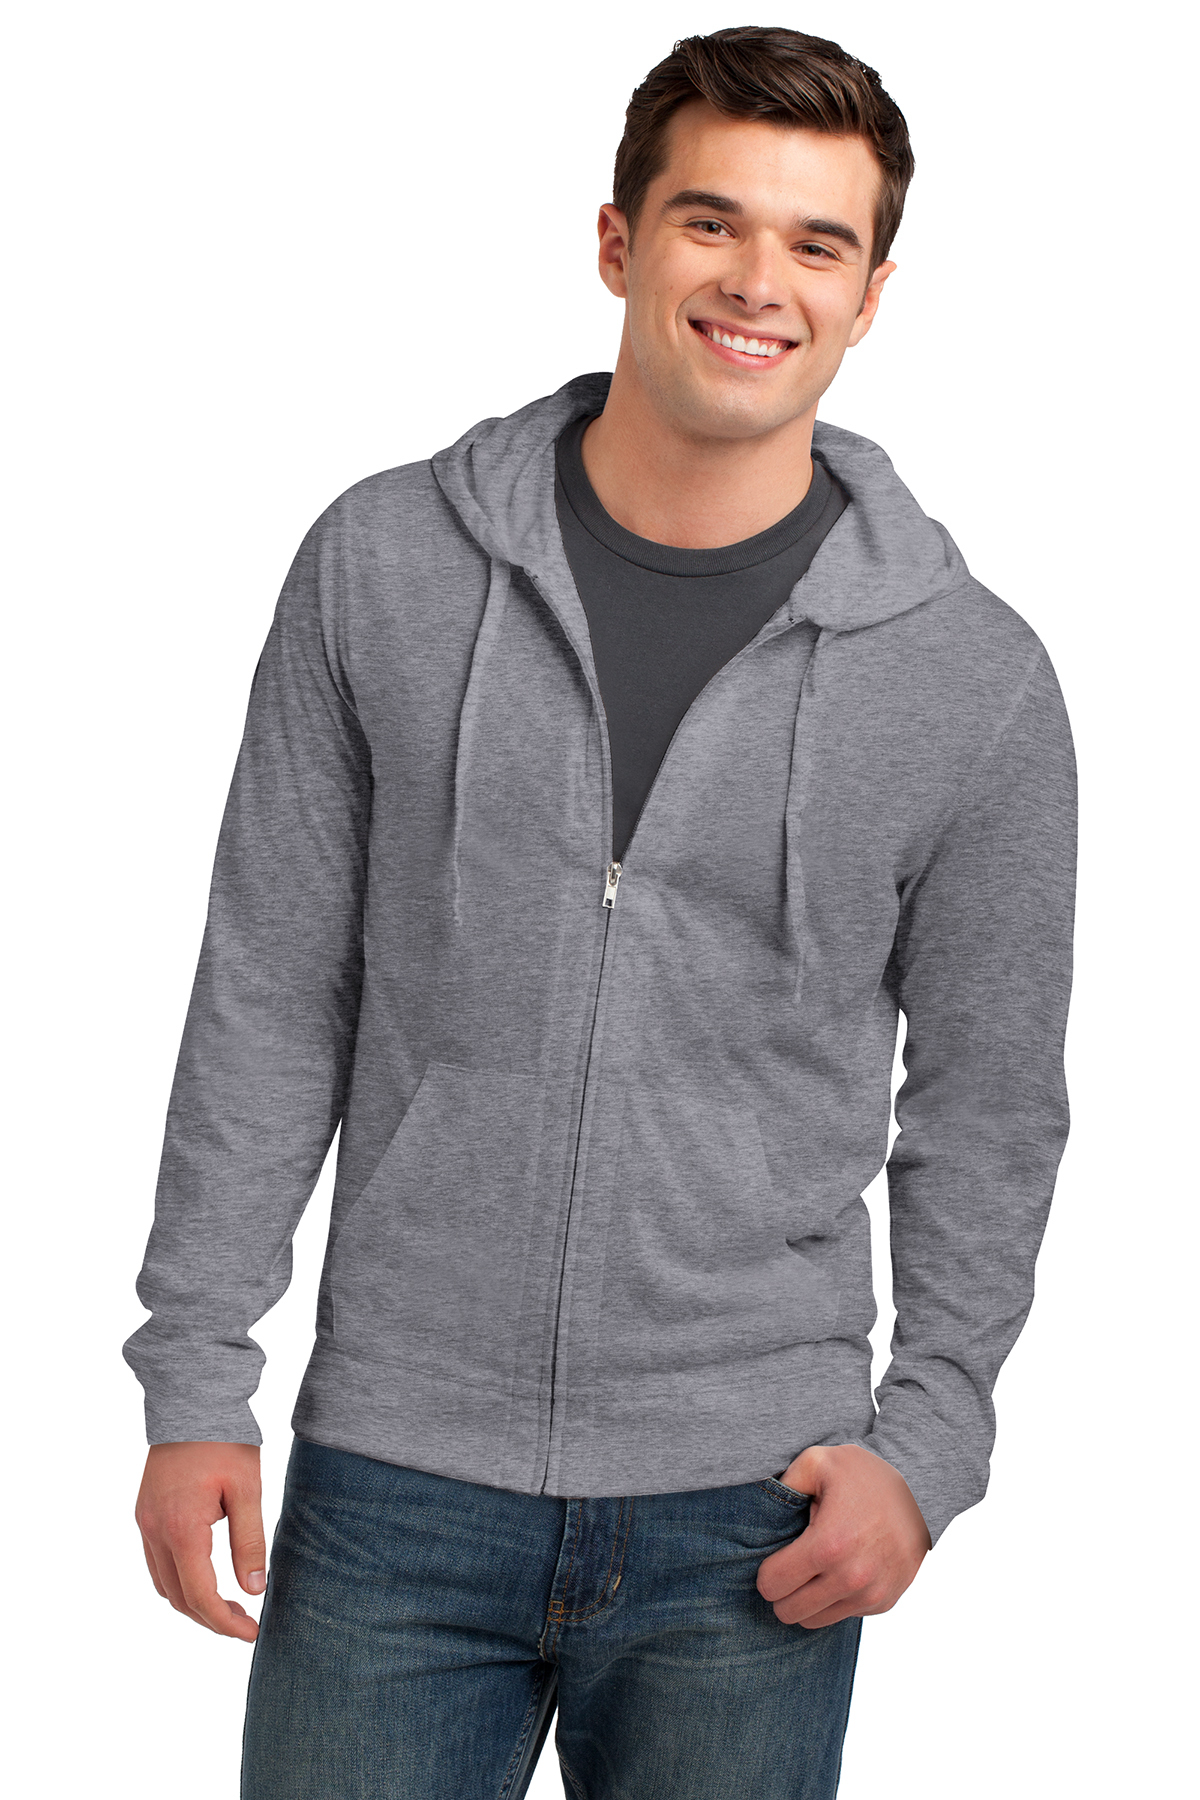 lightweight jersey zip hoodie for men